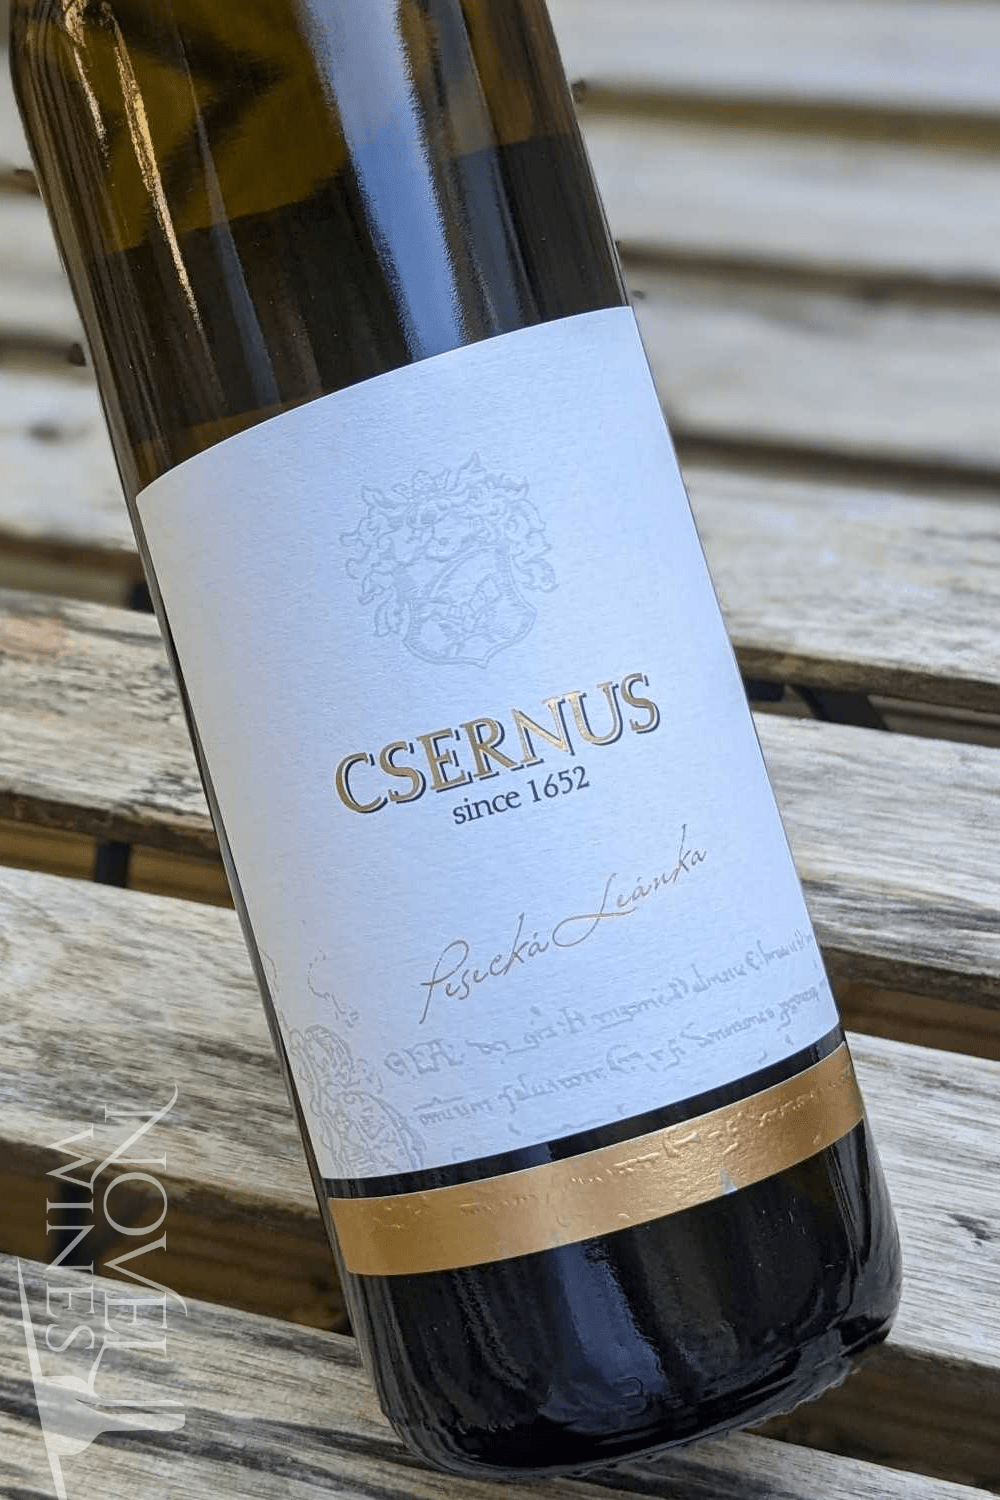 Csernus White Wine Csernus Pesecka Leanka 2021, Slovakia